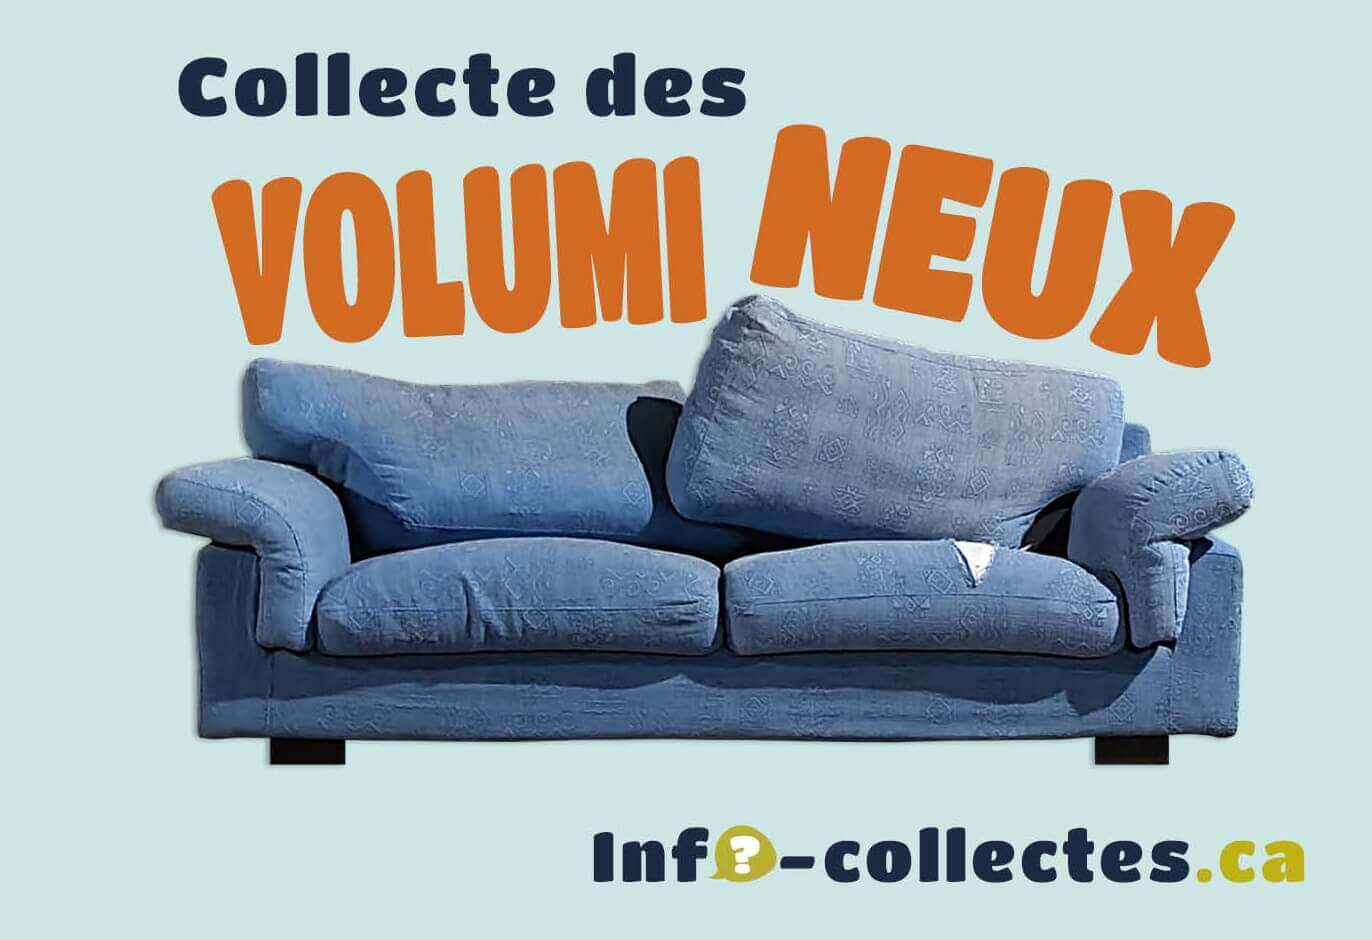 Collecte des volumineux | MRC de Roussillon